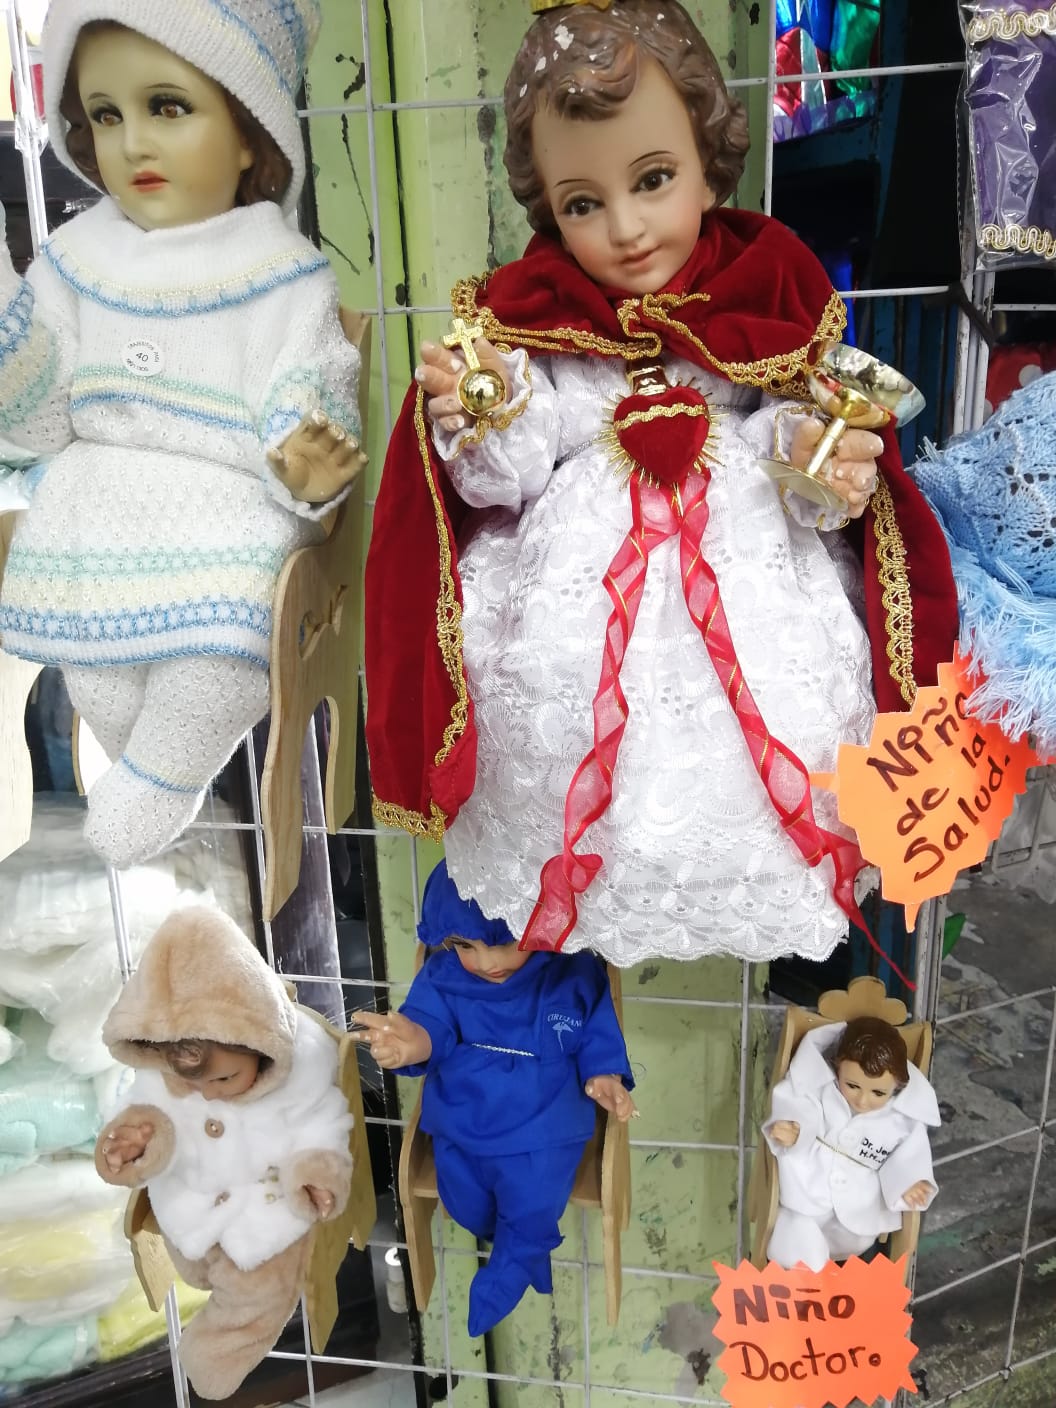 Por pandemia, ponen de moda trajes del Niño Dios cirujano o de Niño Médico